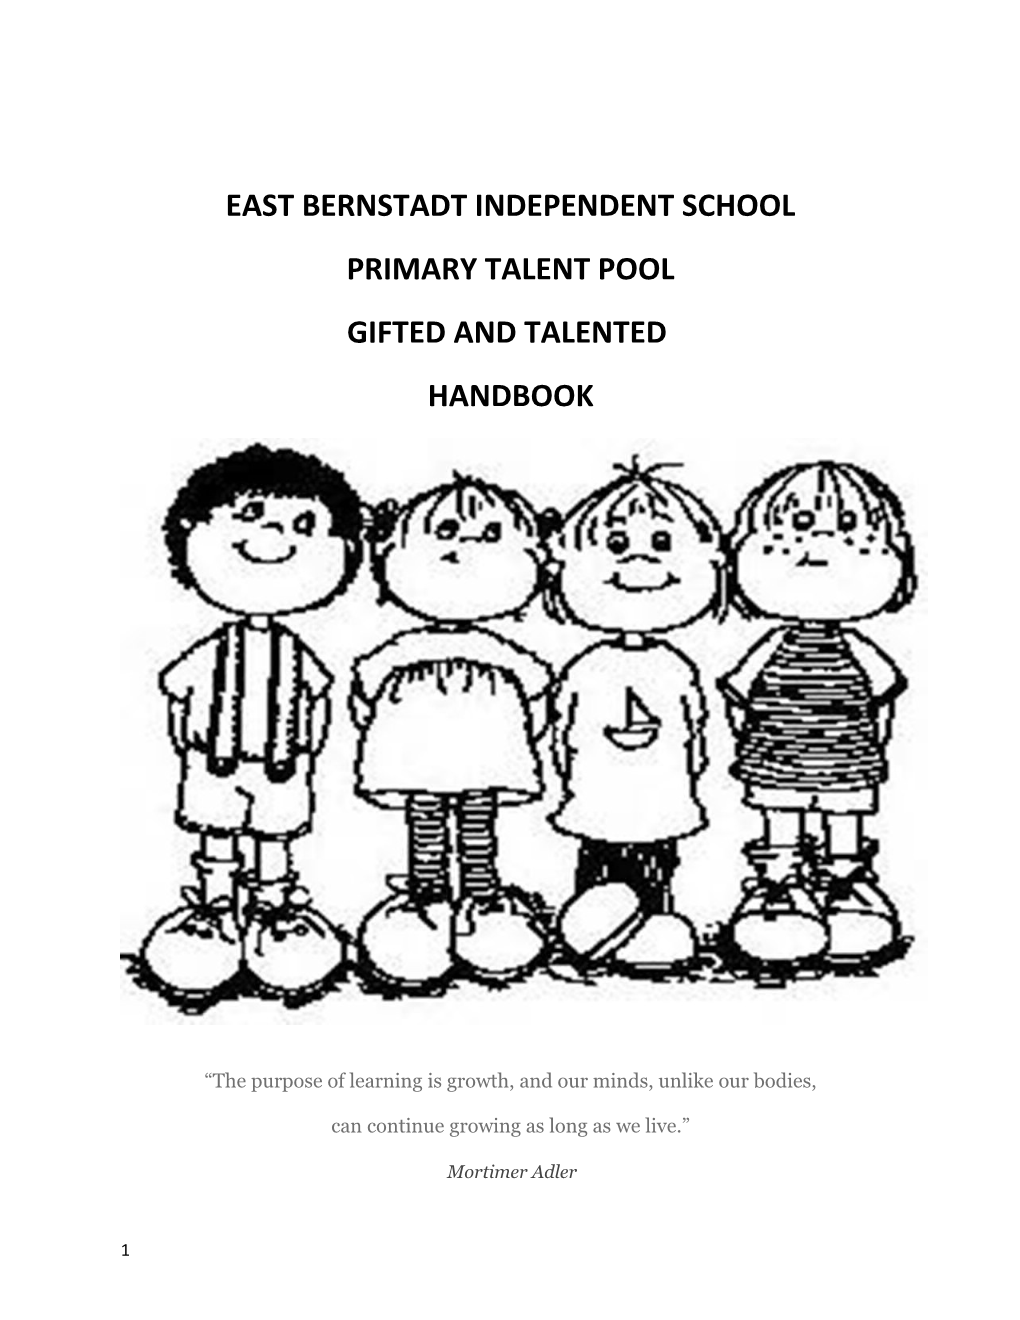 East Bernstadt Independent School